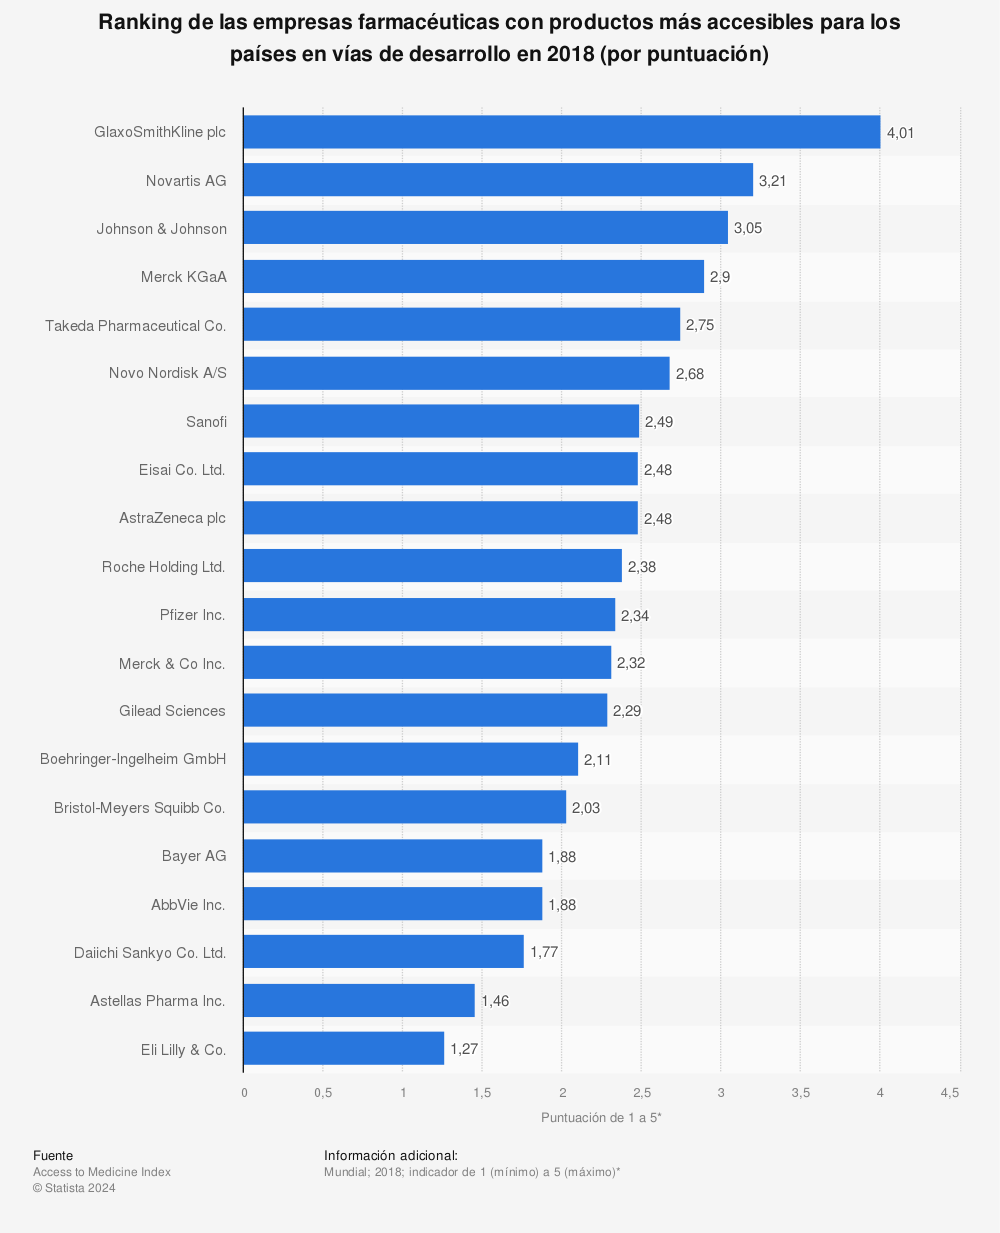 Estadística: Ranking de las empresas farmacéuticas con productos más accesibles para los países en vías de desarrollo en 2018 (por puntuación) | Statista